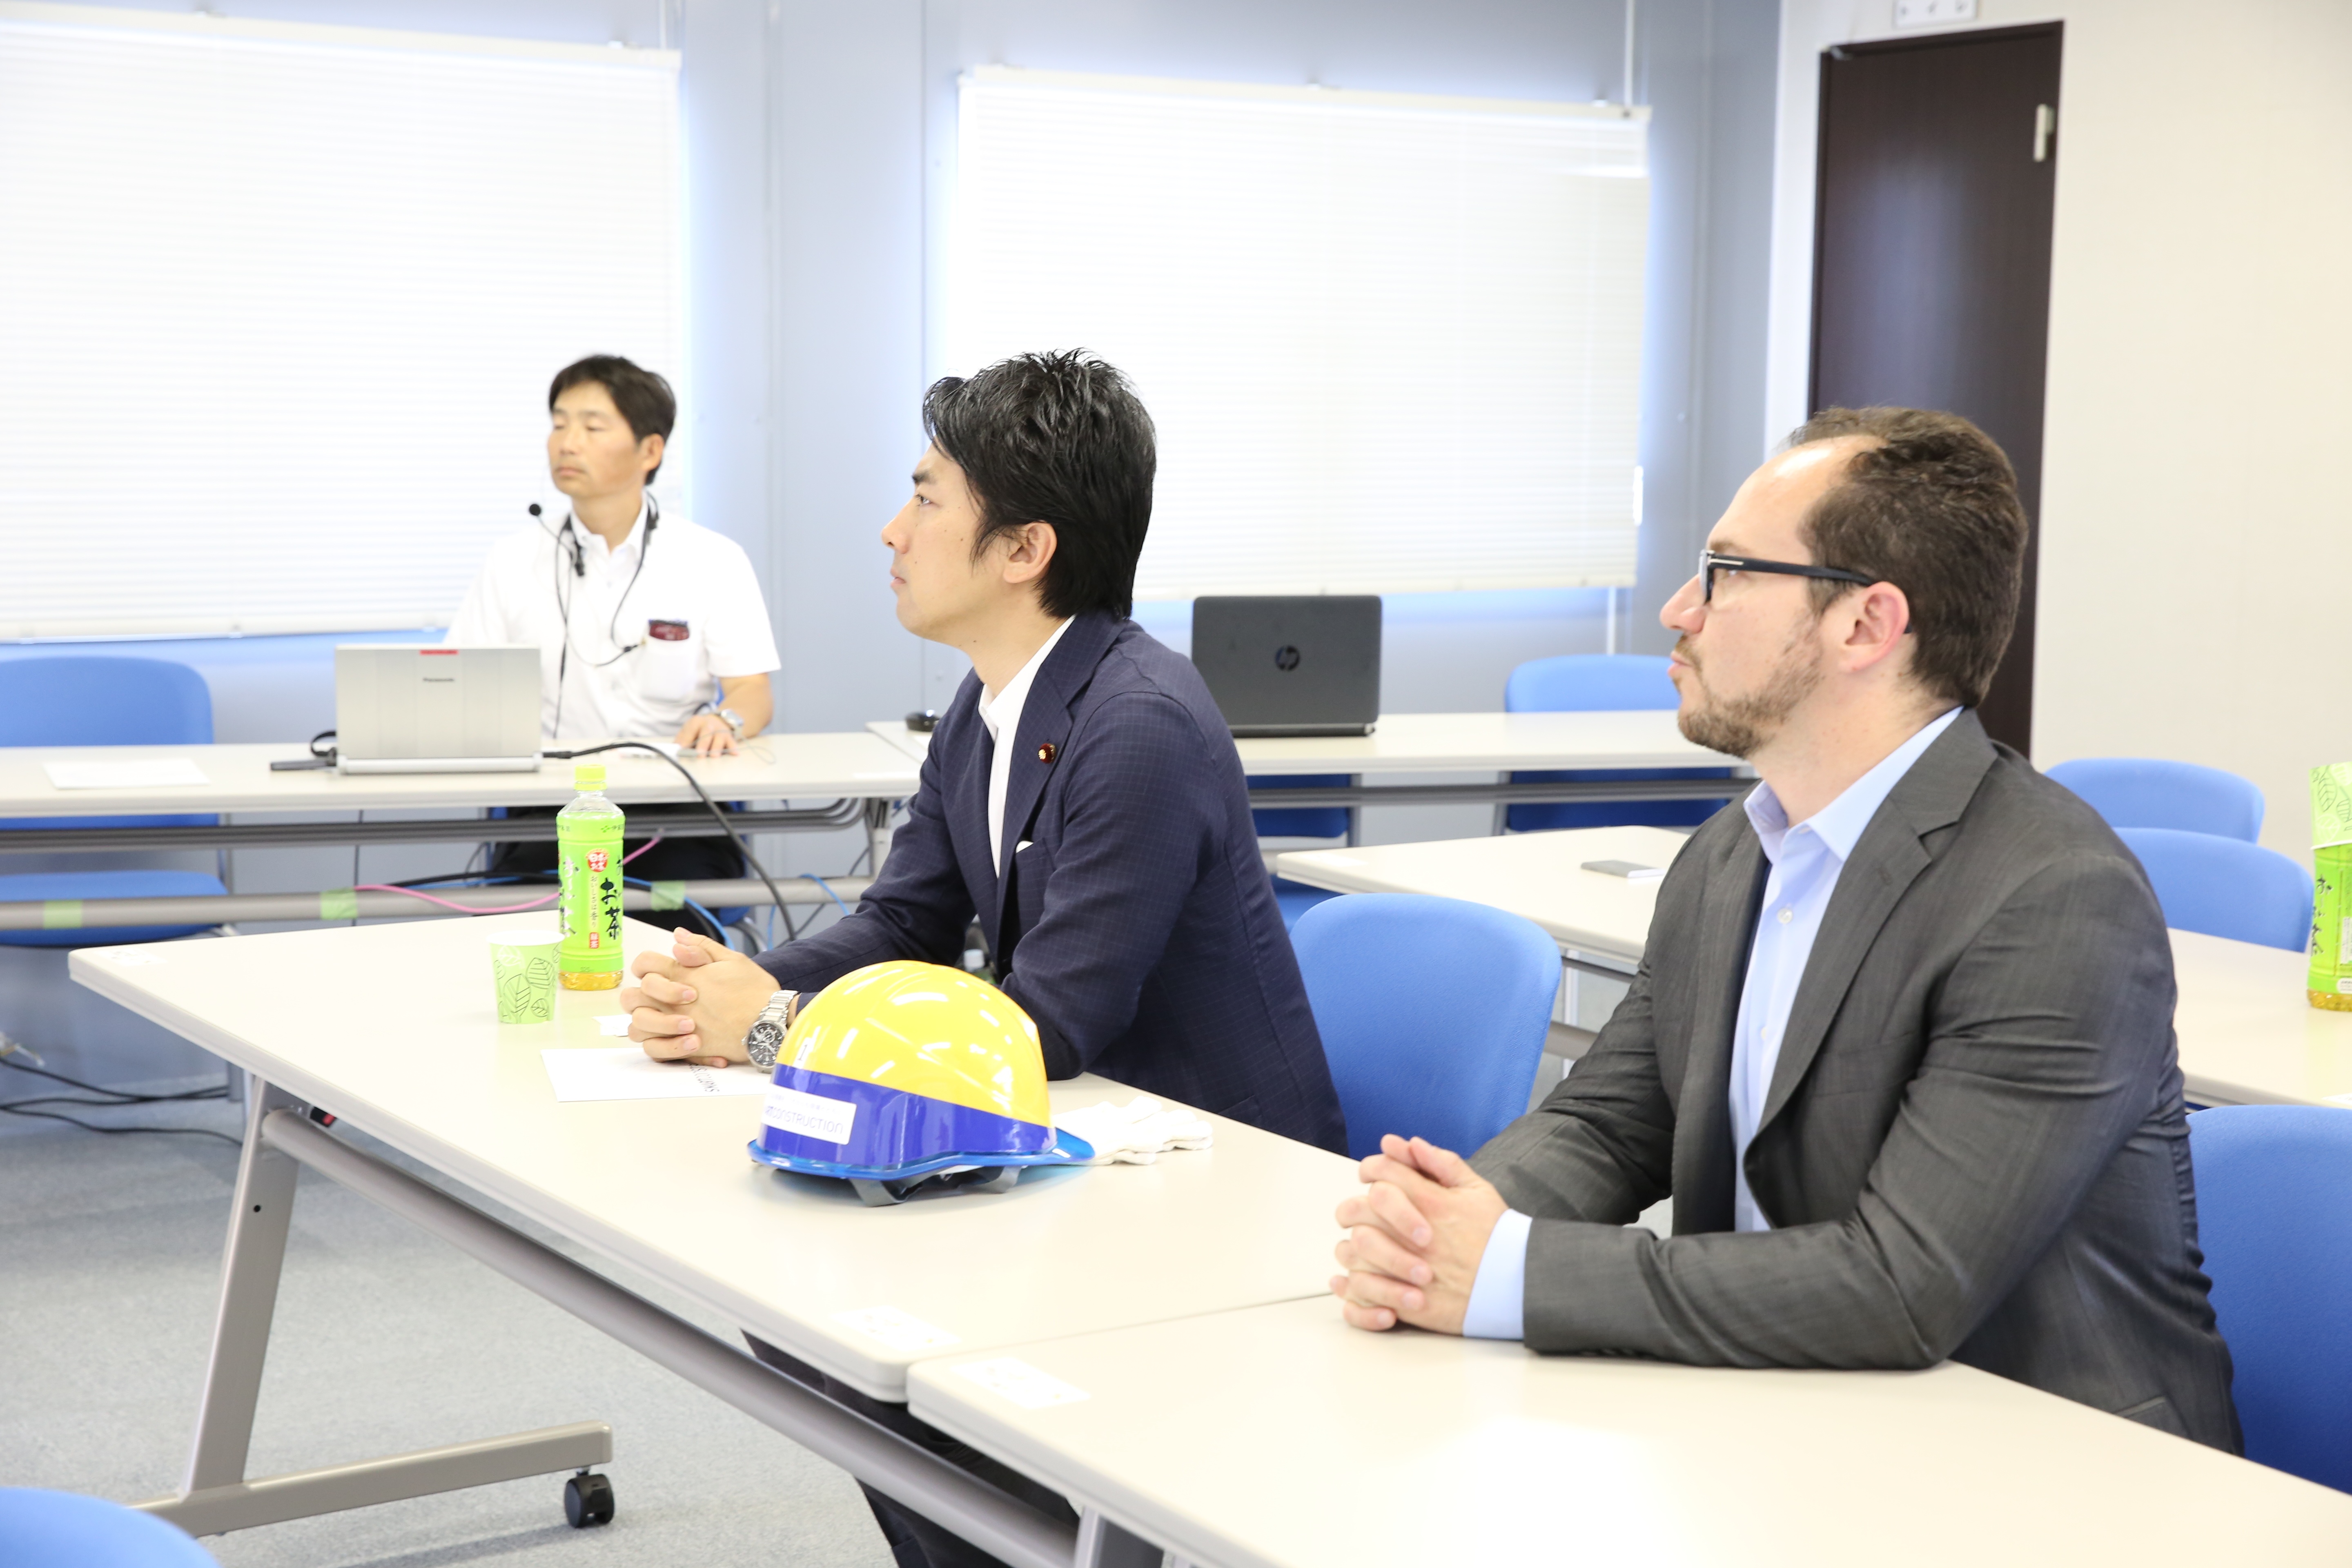 Prospective PM of Japan, Shinjirō Koizumi, with Skycatch CEO, Christian Sanz 